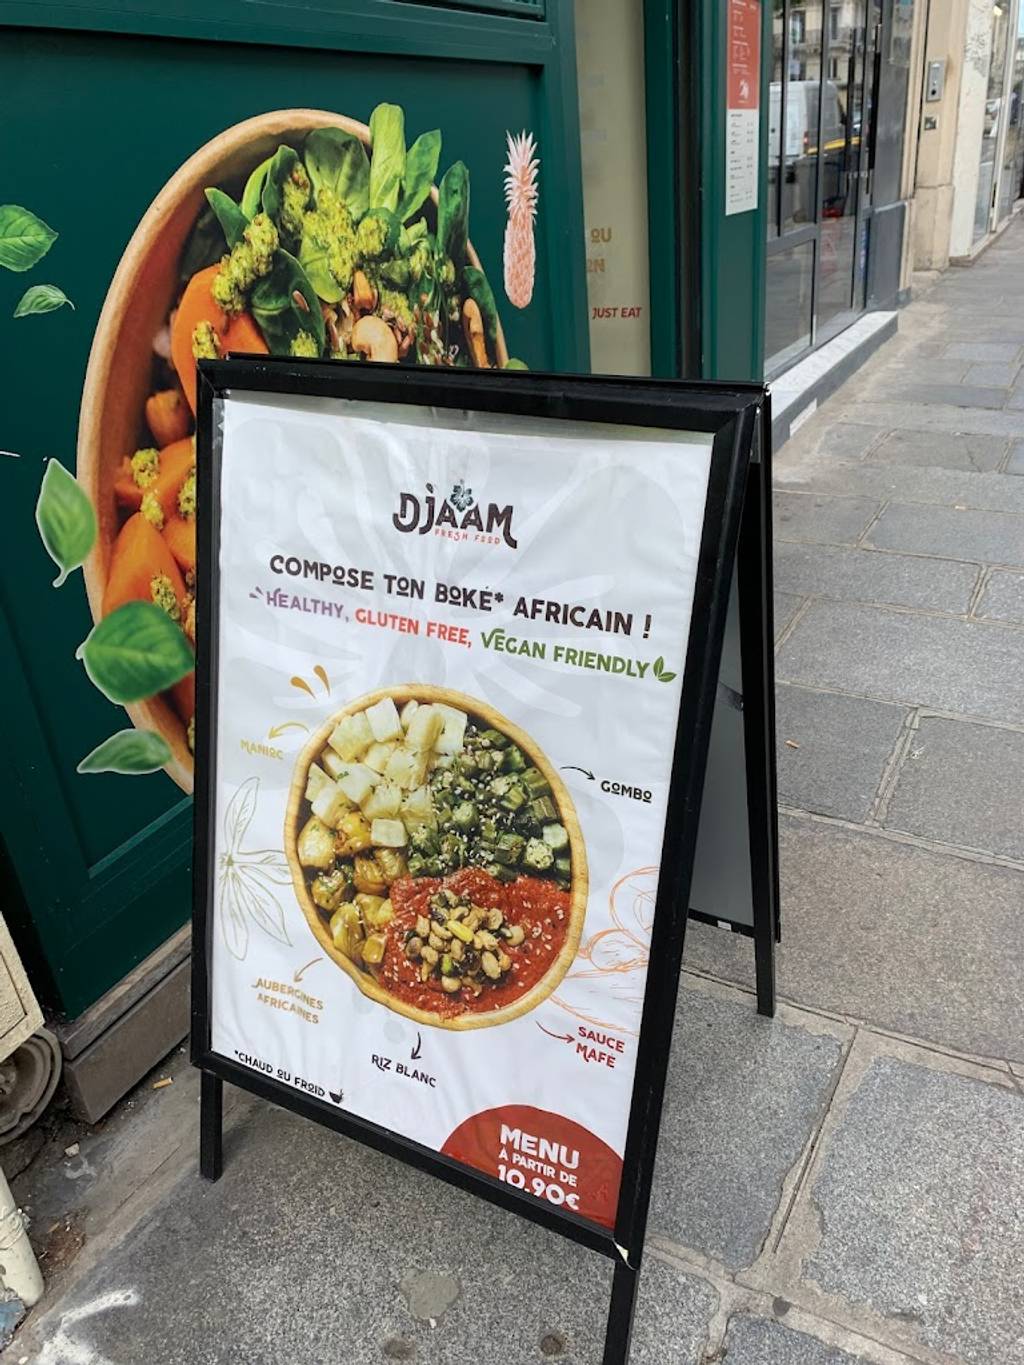 Djaam Paris - Food Recipe Ingredient Cuisine Public space